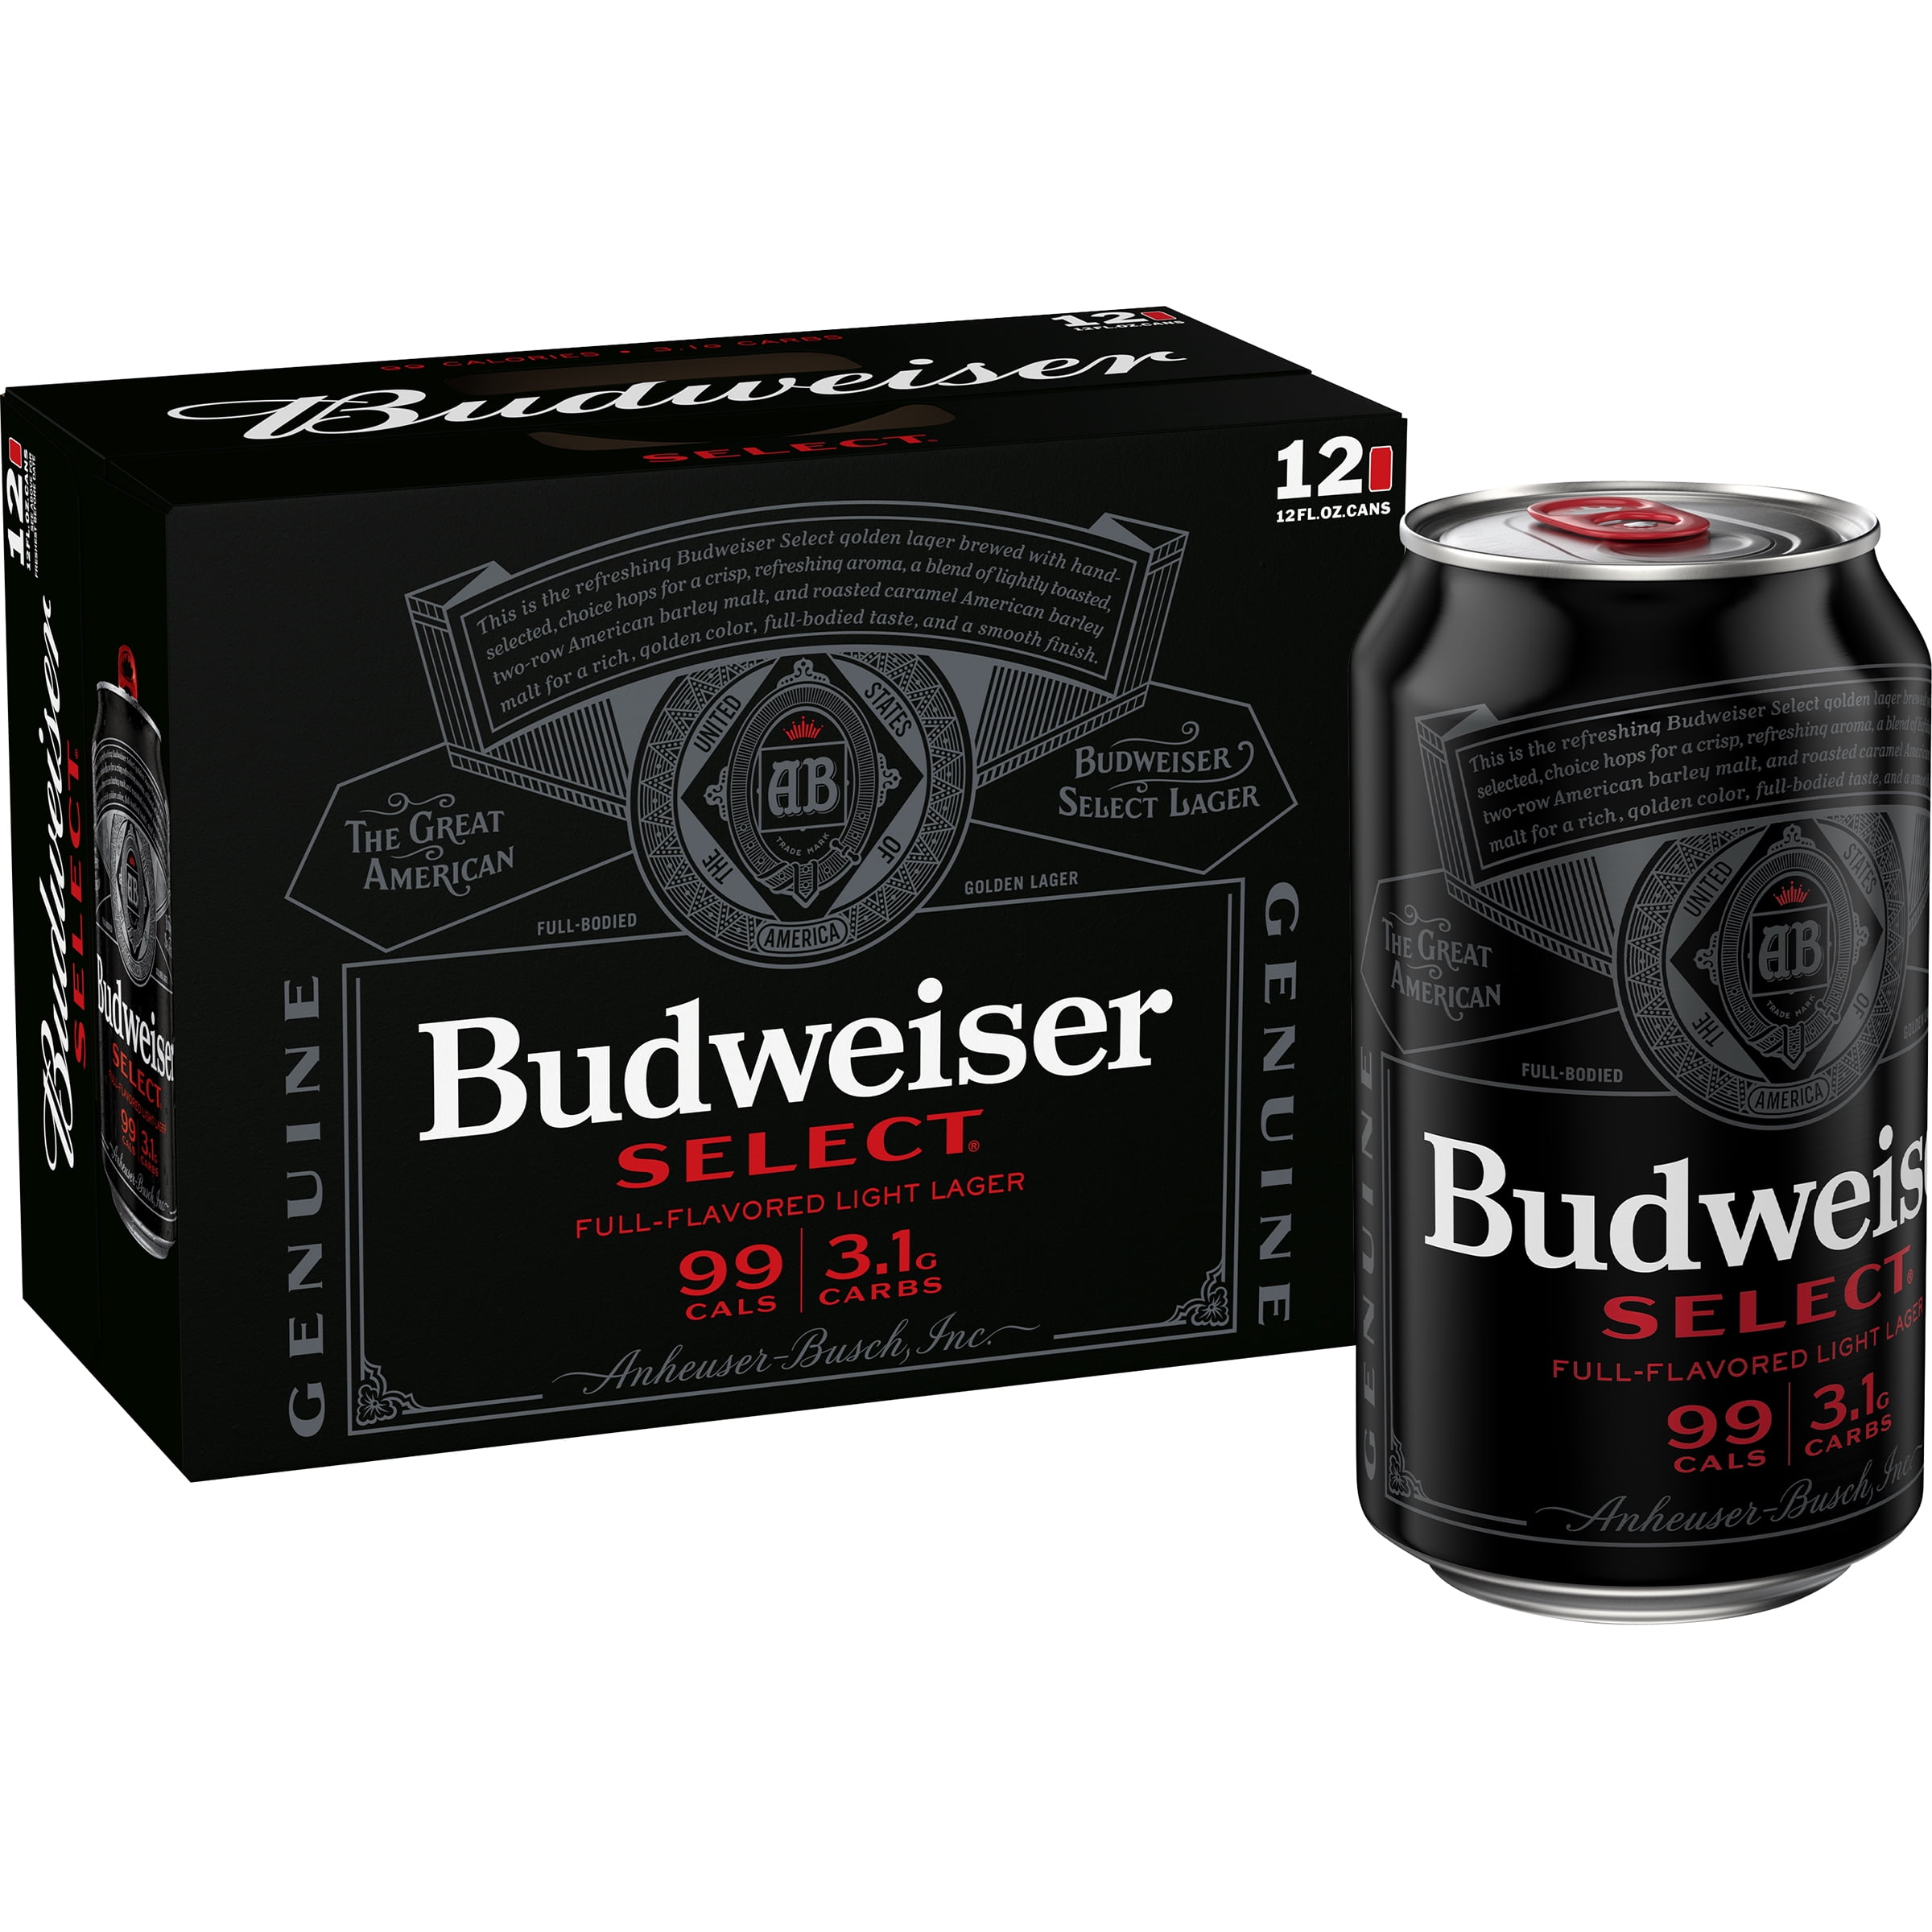 Будвайзер Селект. Budweiser select пиво. Красный лагер Американ Лайт Budweiser. Bud select 55. Selected full